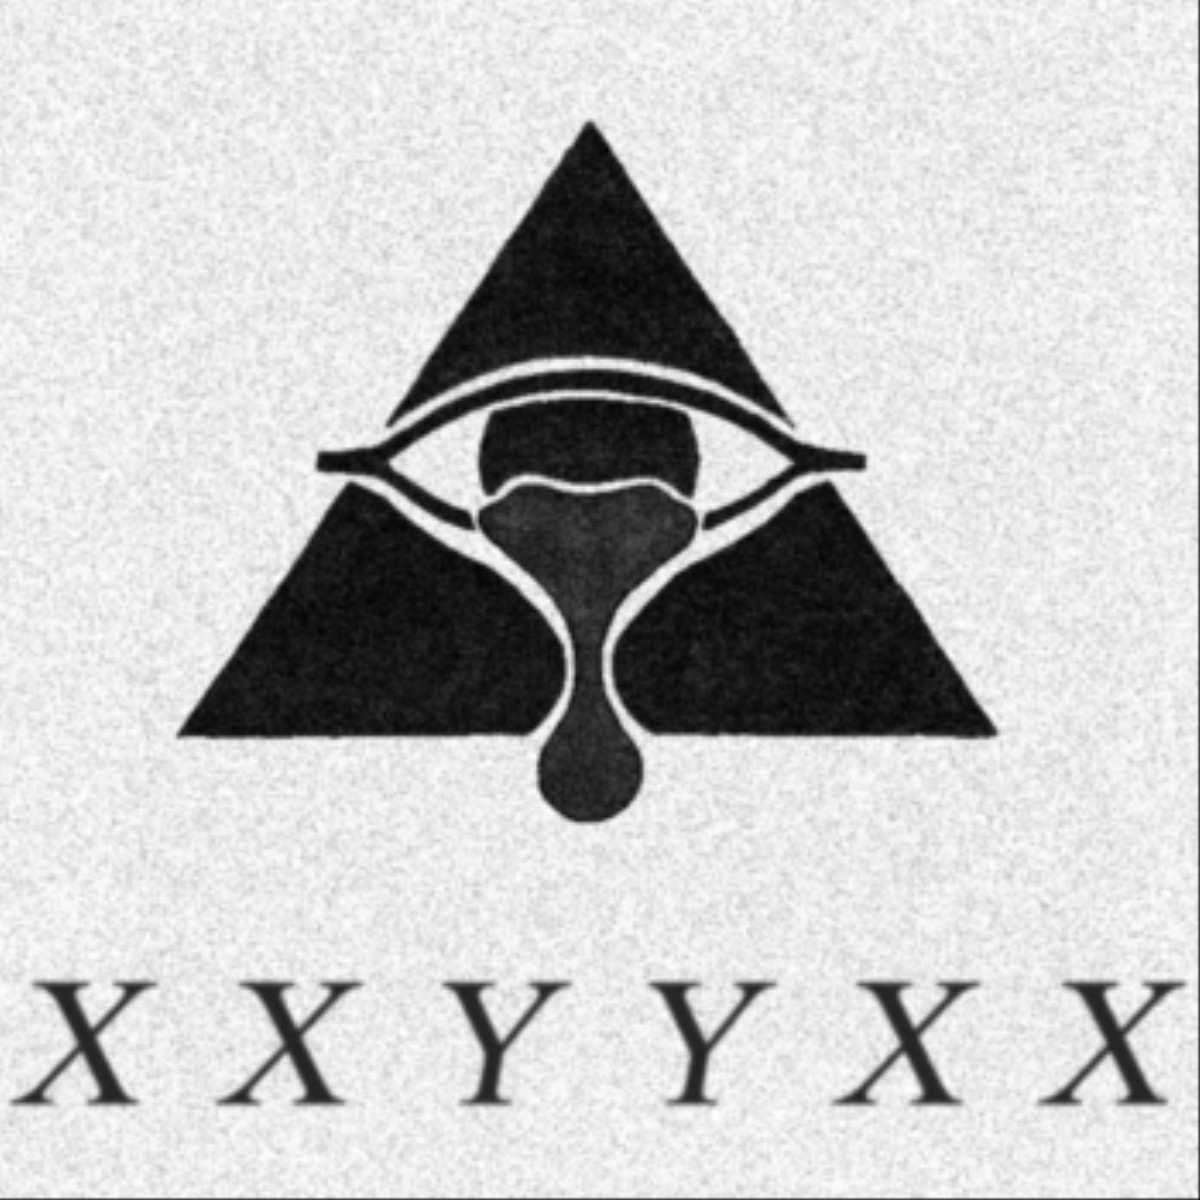 1200px x 672px - XXYYXX Says He's Head Of The Illuminati